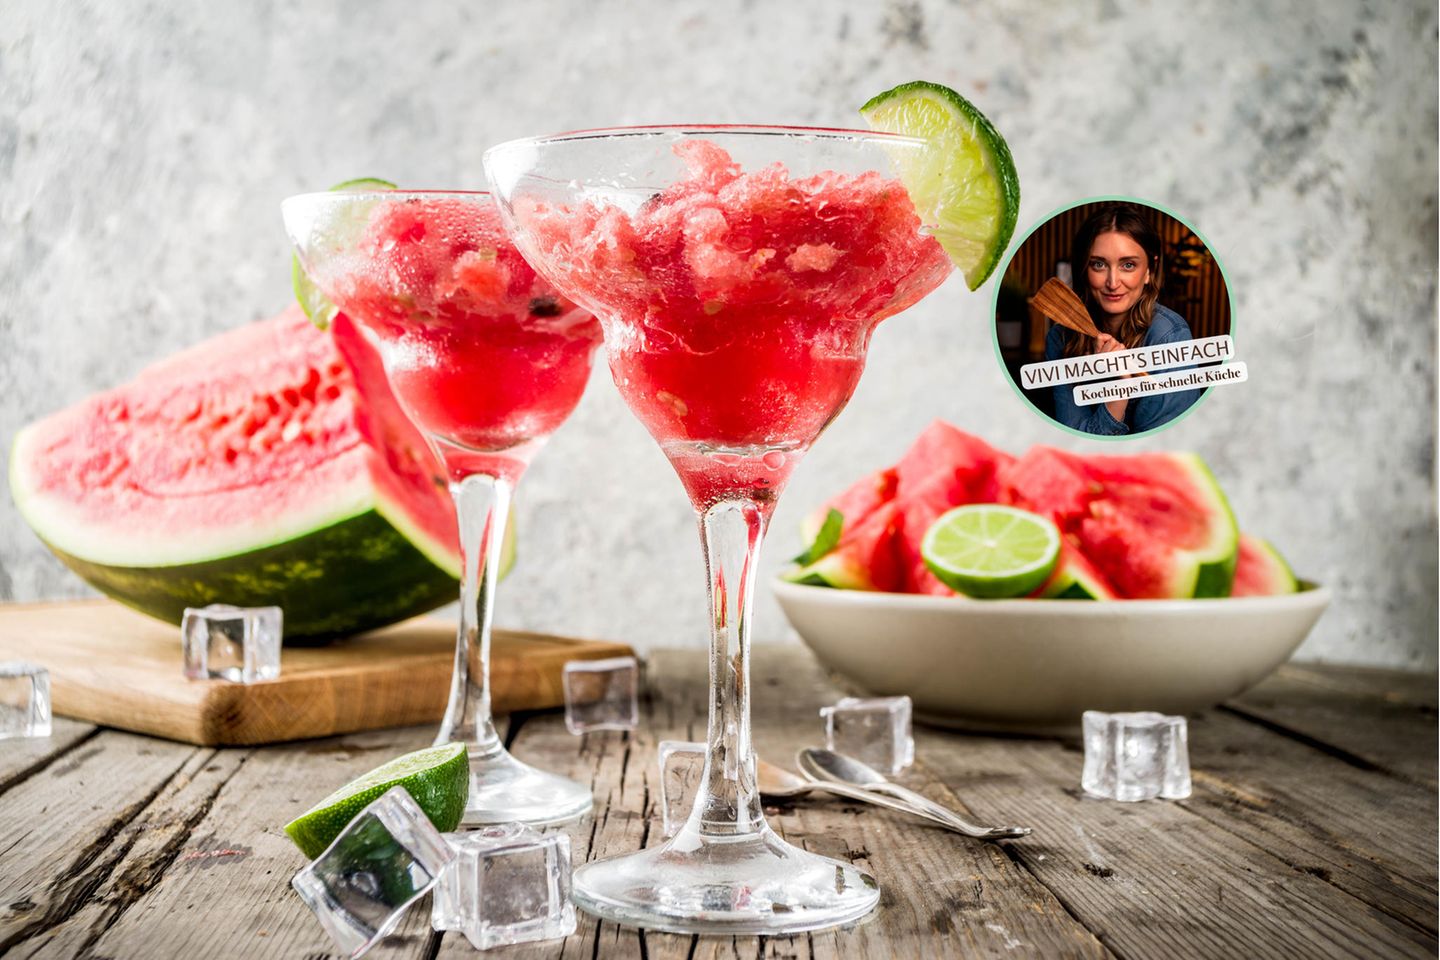 Vivi macht's einfach: Melonen-Granita: Einfacher Sommerdrink aus nur 3 Zutaten